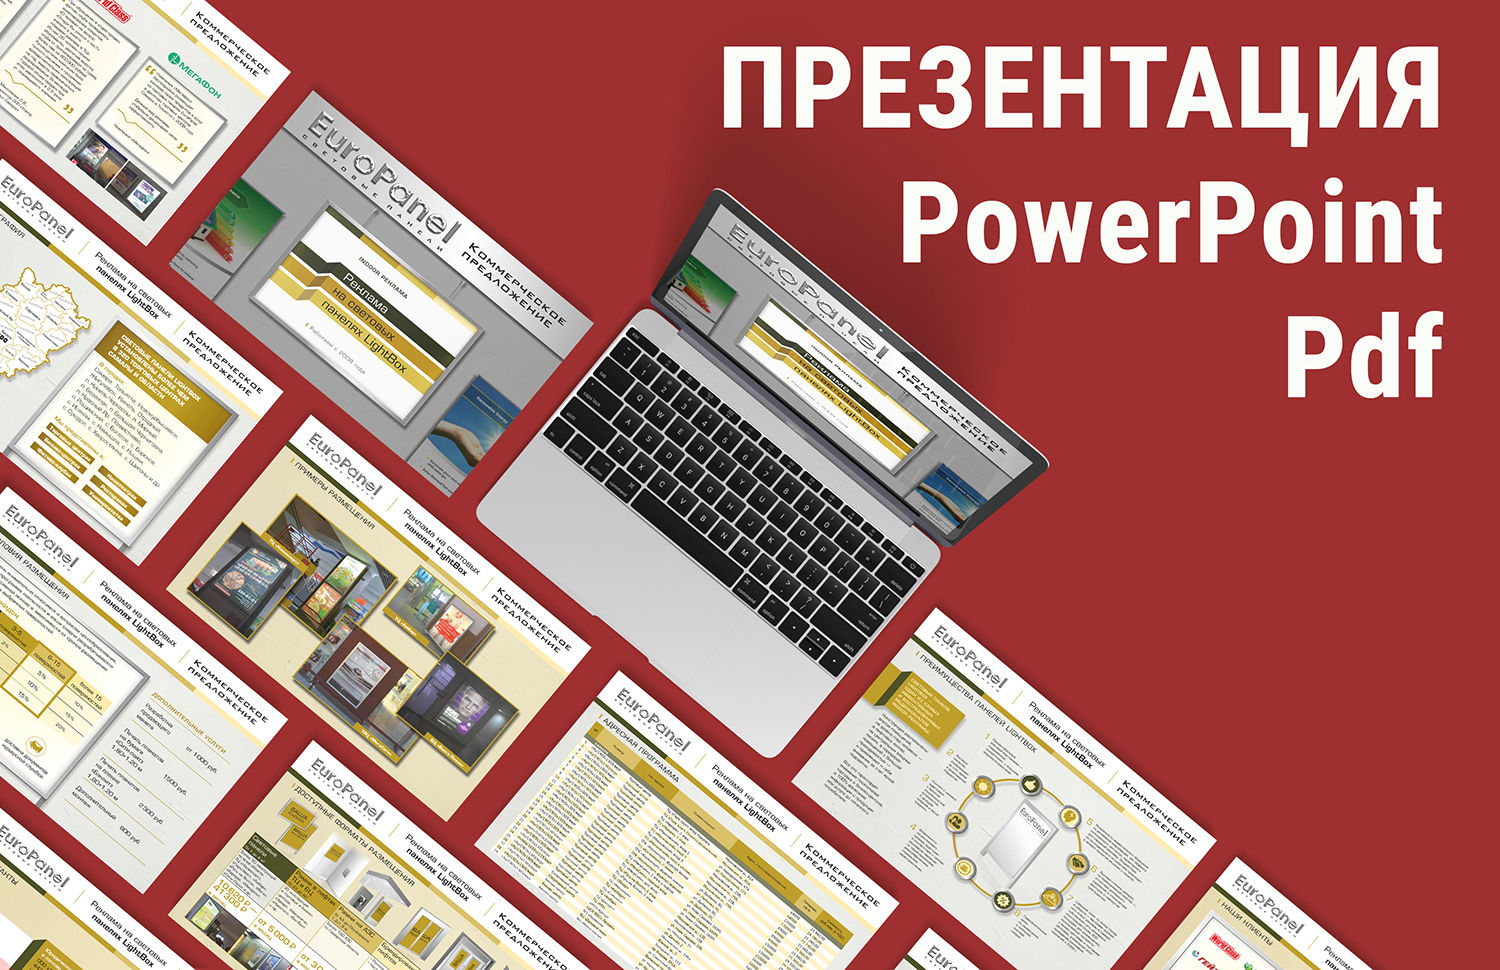 Презентация Pdf, PowerPoint, инфографика за 1 000 руб.